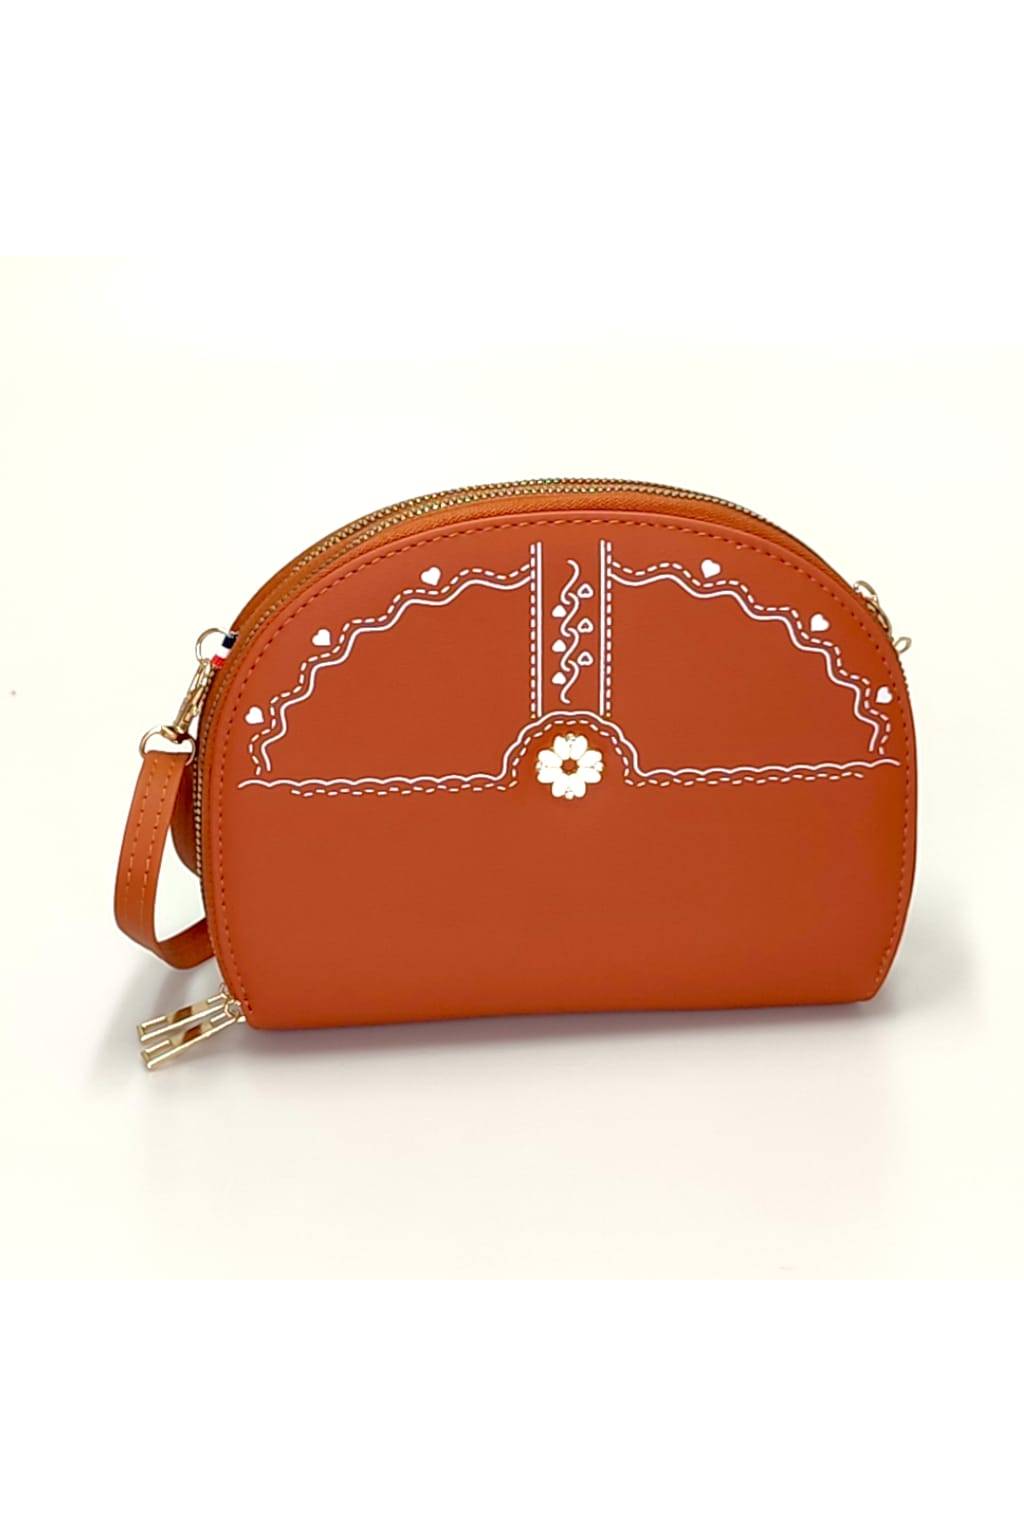 A - Mini Handtasche/Geldbörse für Damen ZY-21557 braun - handtaschen -ausverkauf.de